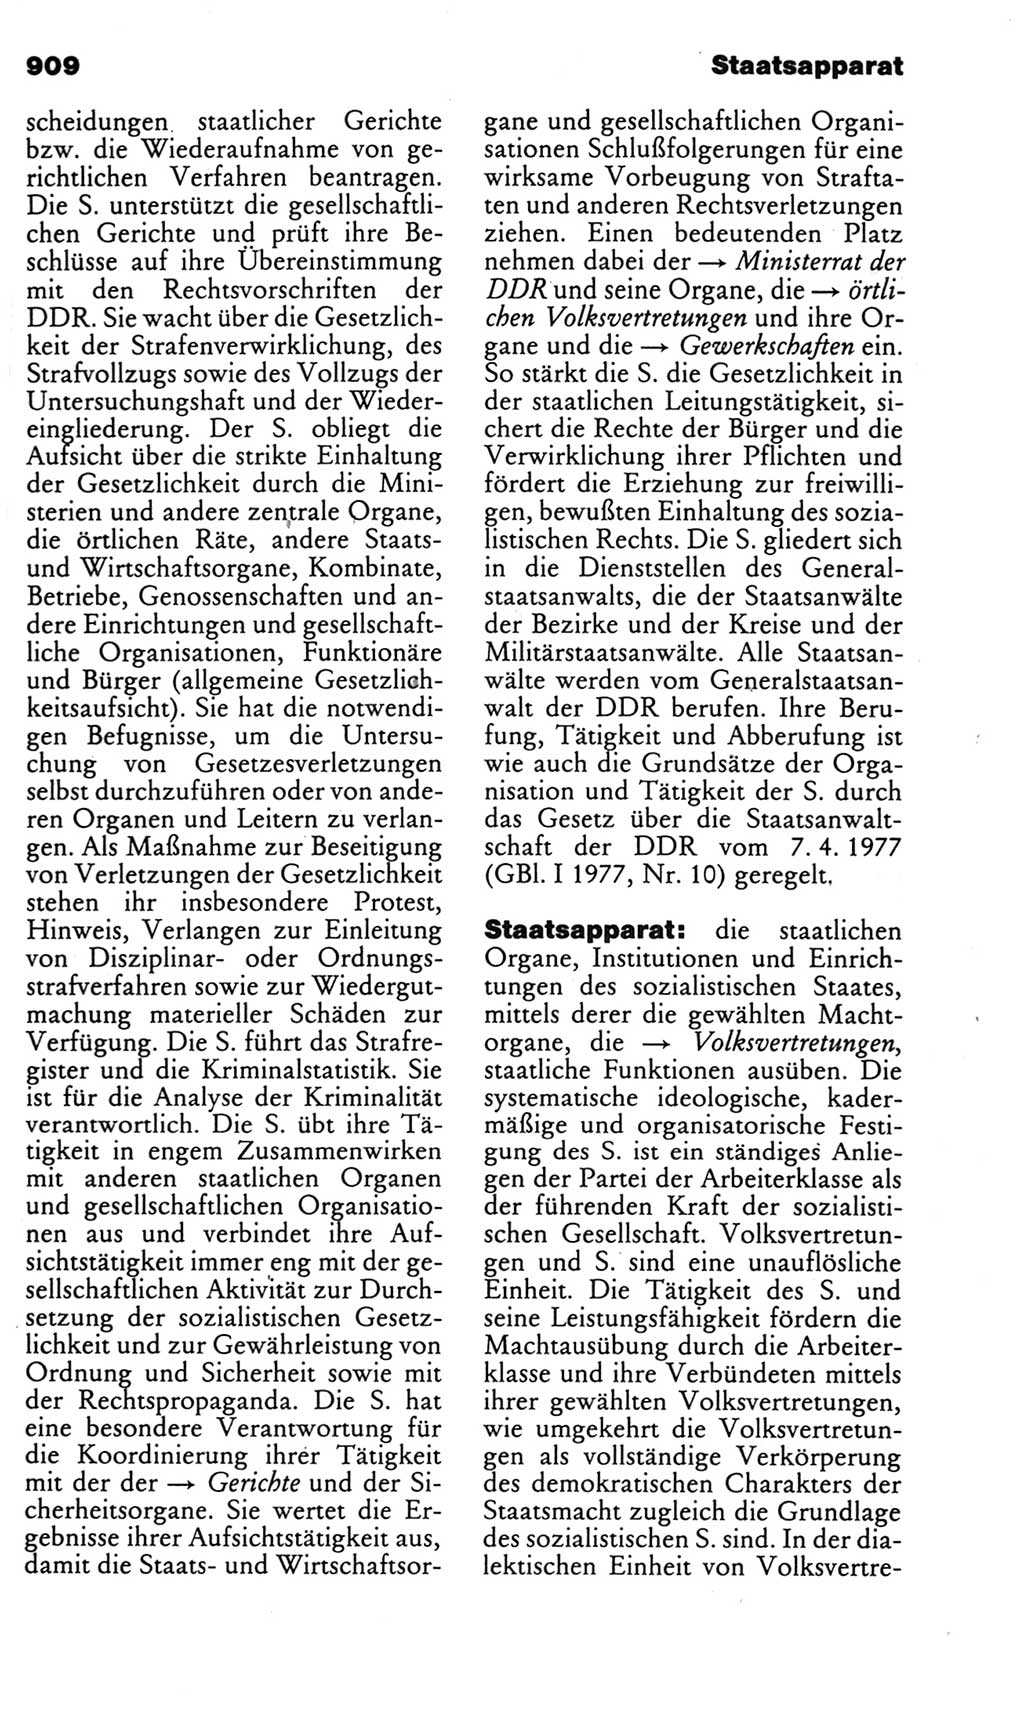 Kleines politisches Wörterbuch [Deutsche Demokratische Republik (DDR)] 1985, Seite 909 (Kl. pol. Wb. DDR 1985, S. 909)